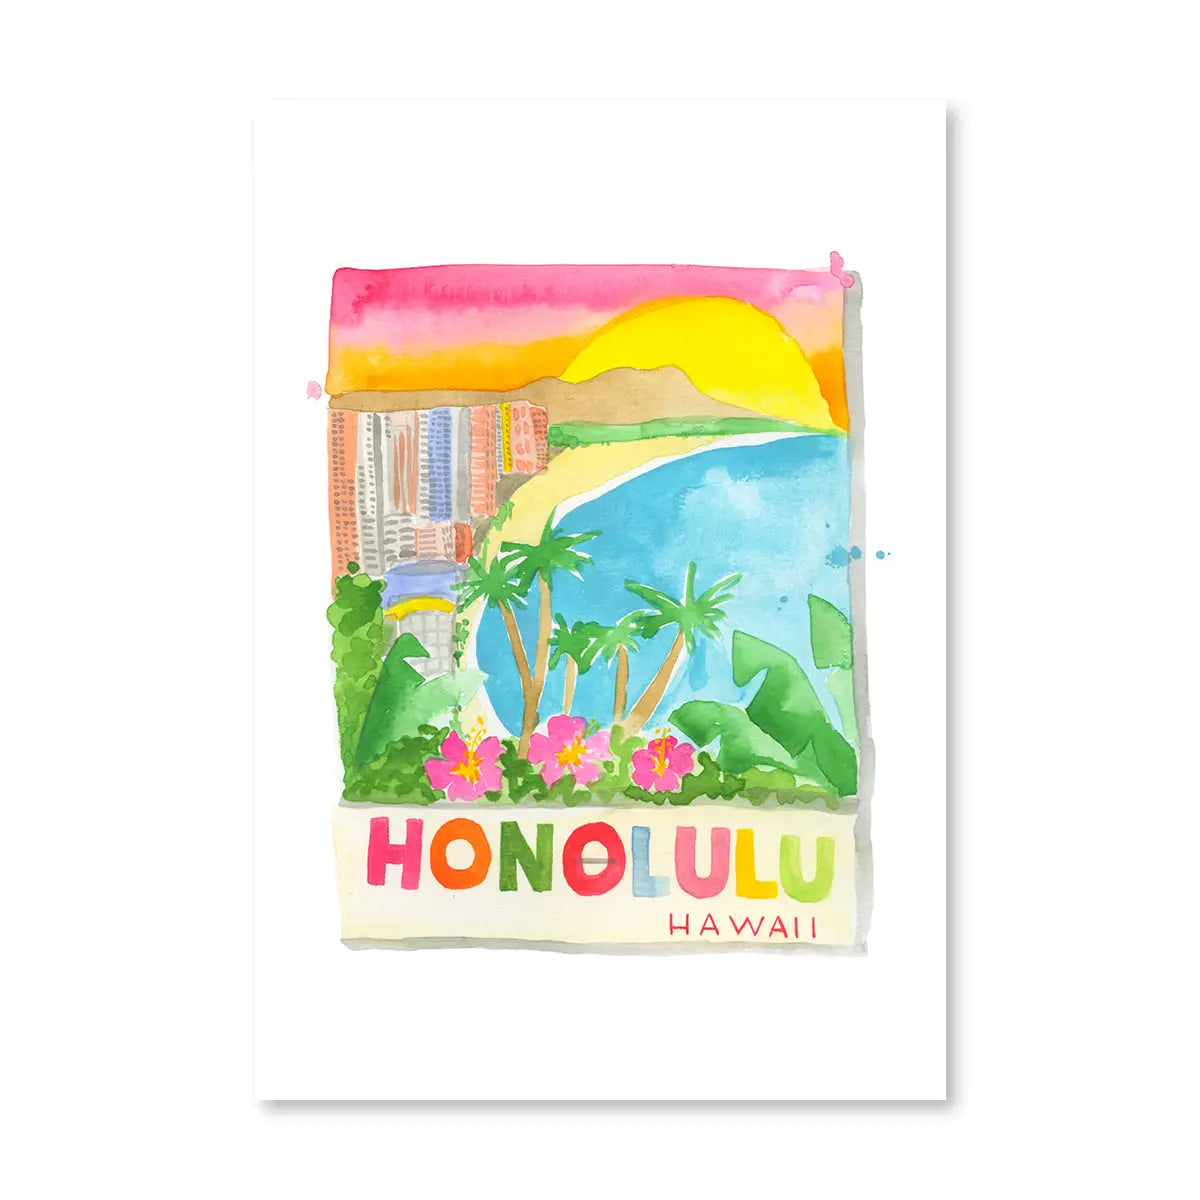 Honolulu Matchbox Print 5x7